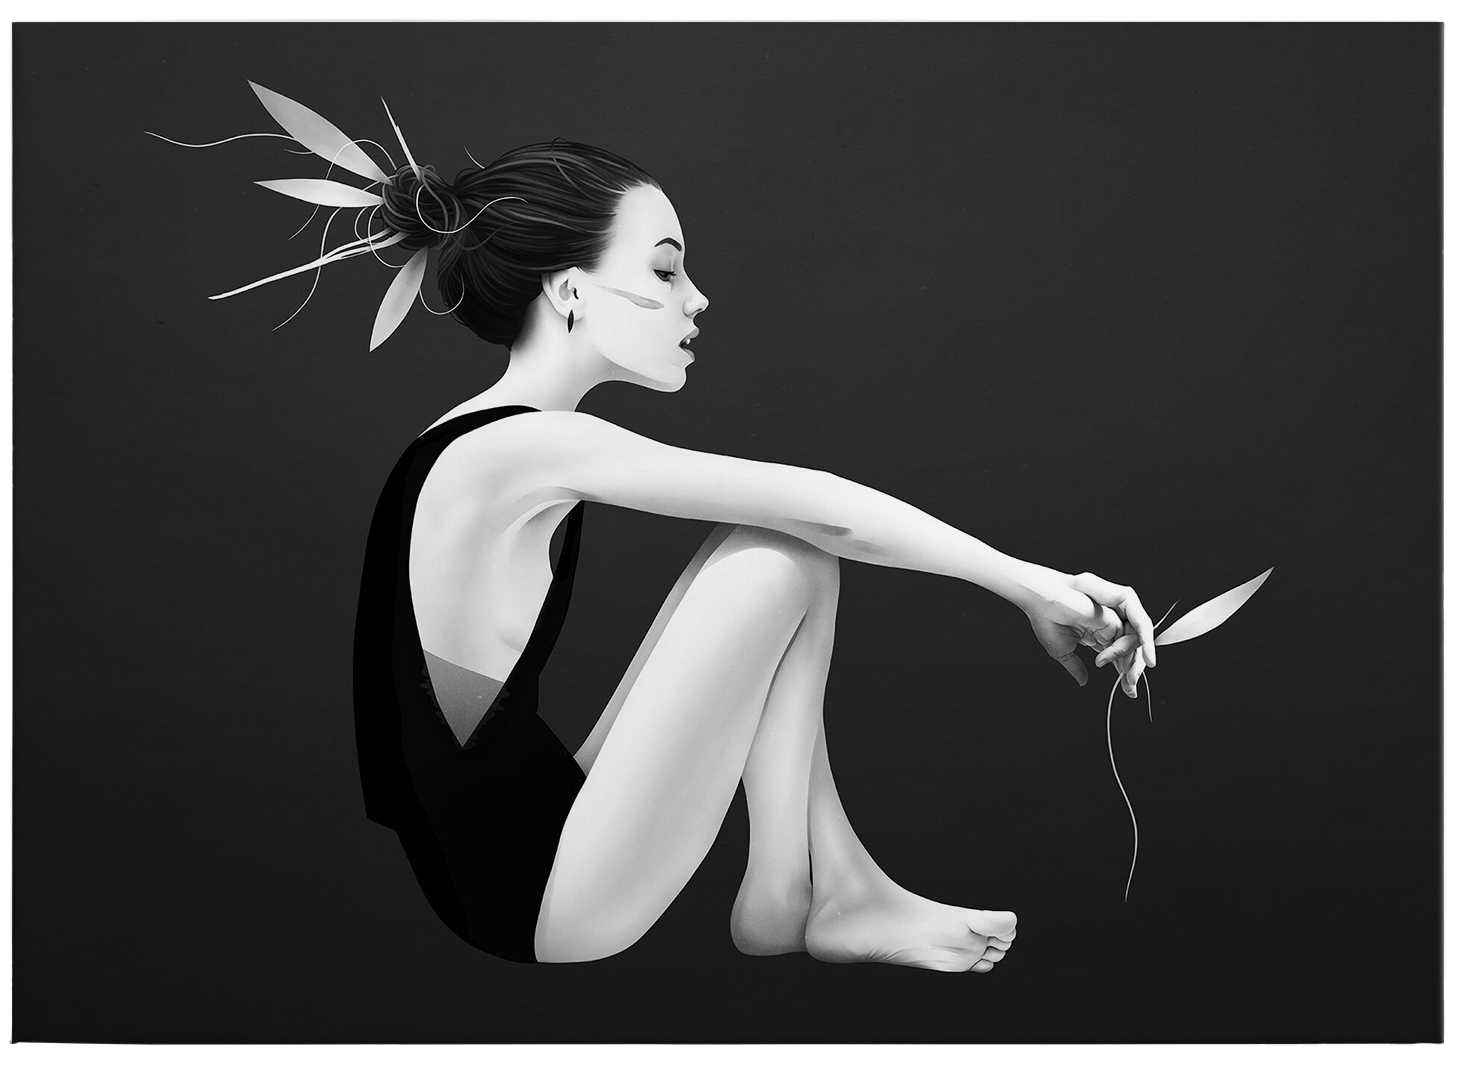             Toile noir et blanc "Skyling" avec figure féminine - 0,70 m x 0,50 m
        